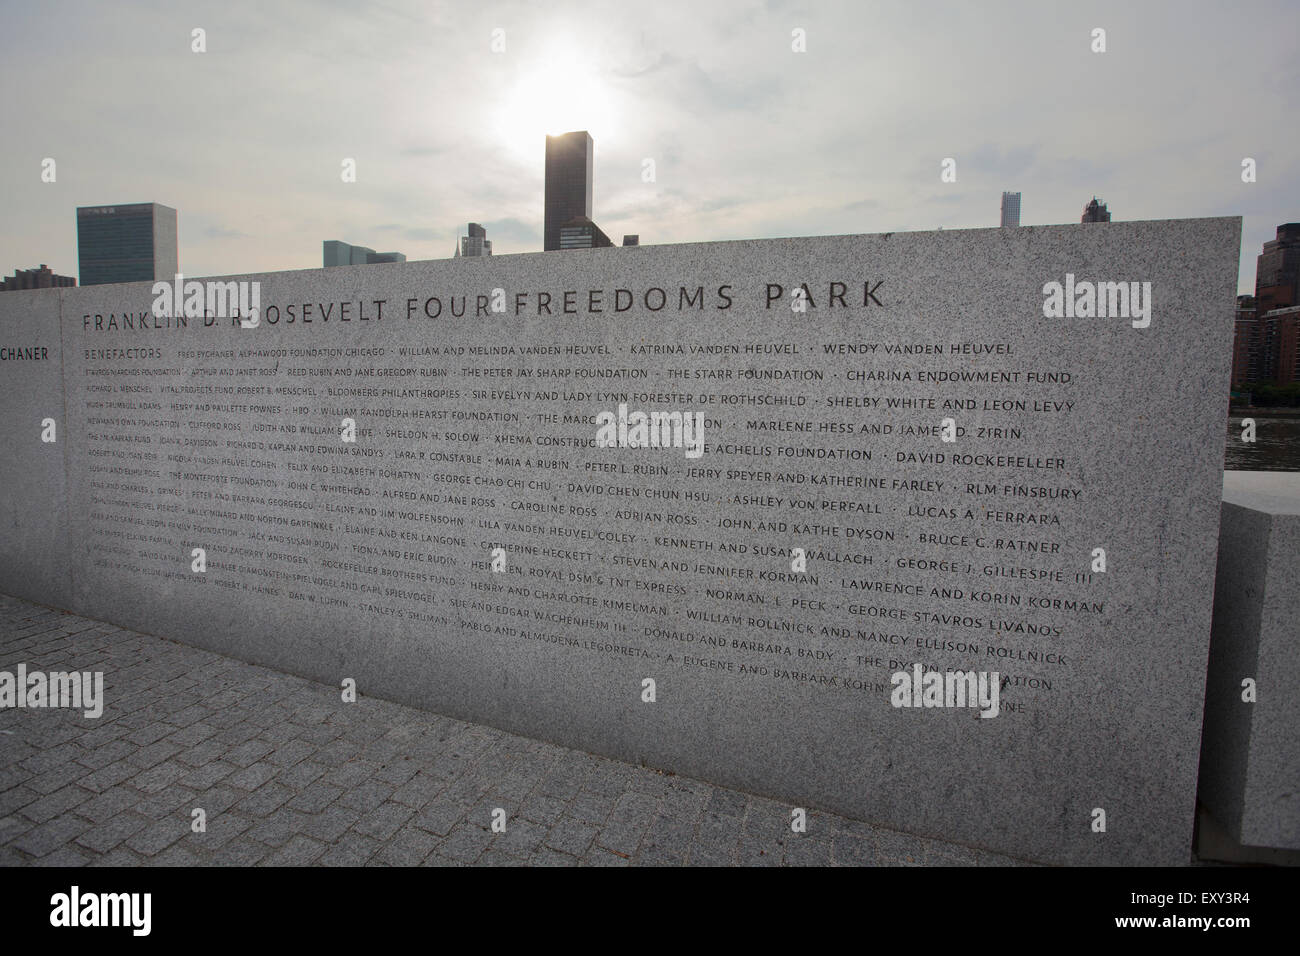 NEW YORK - 28. Mai 2015: Ein Denkmal Ehren Franklin an den vier Freiheiten Park in New York City. Stockfoto